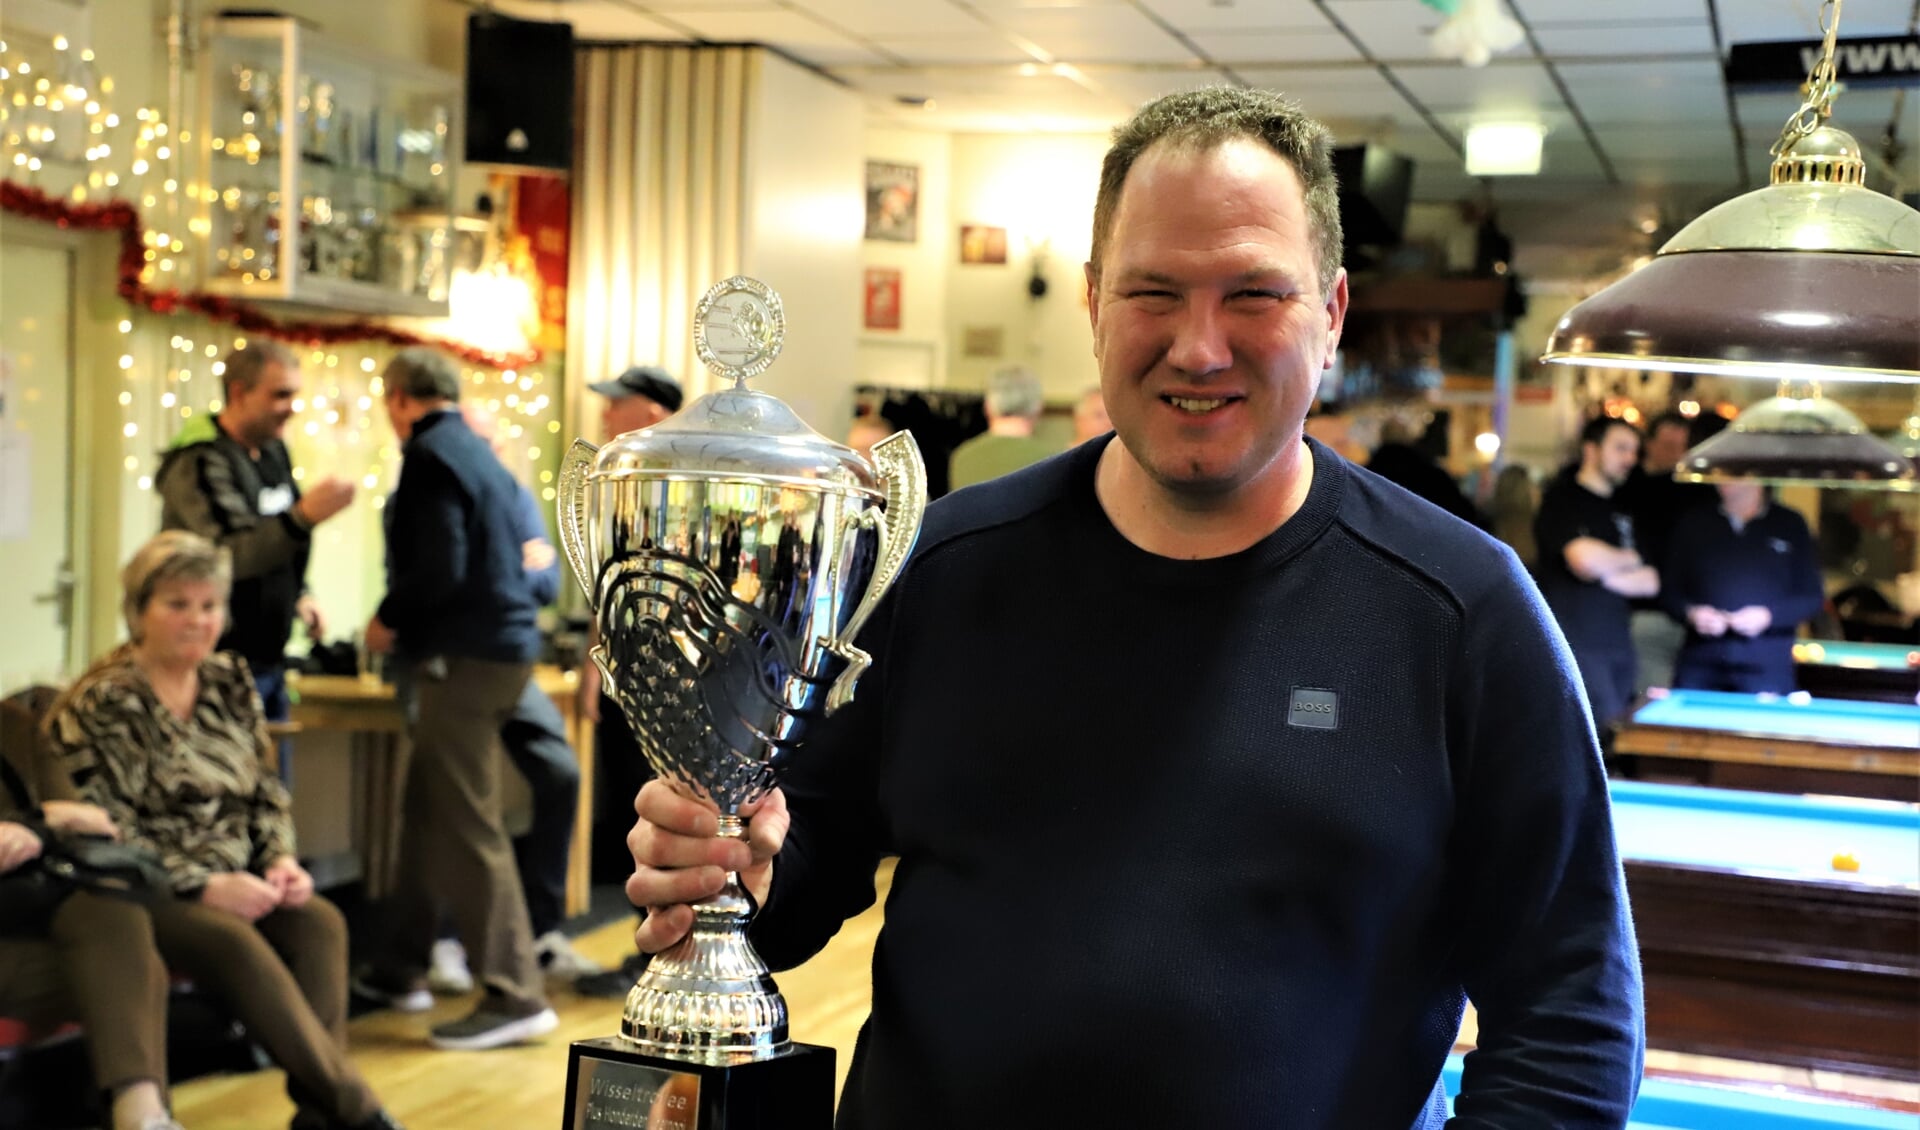 Winnaar Gradus Otto met de wisseltrofee van het Honderden-toernooi.